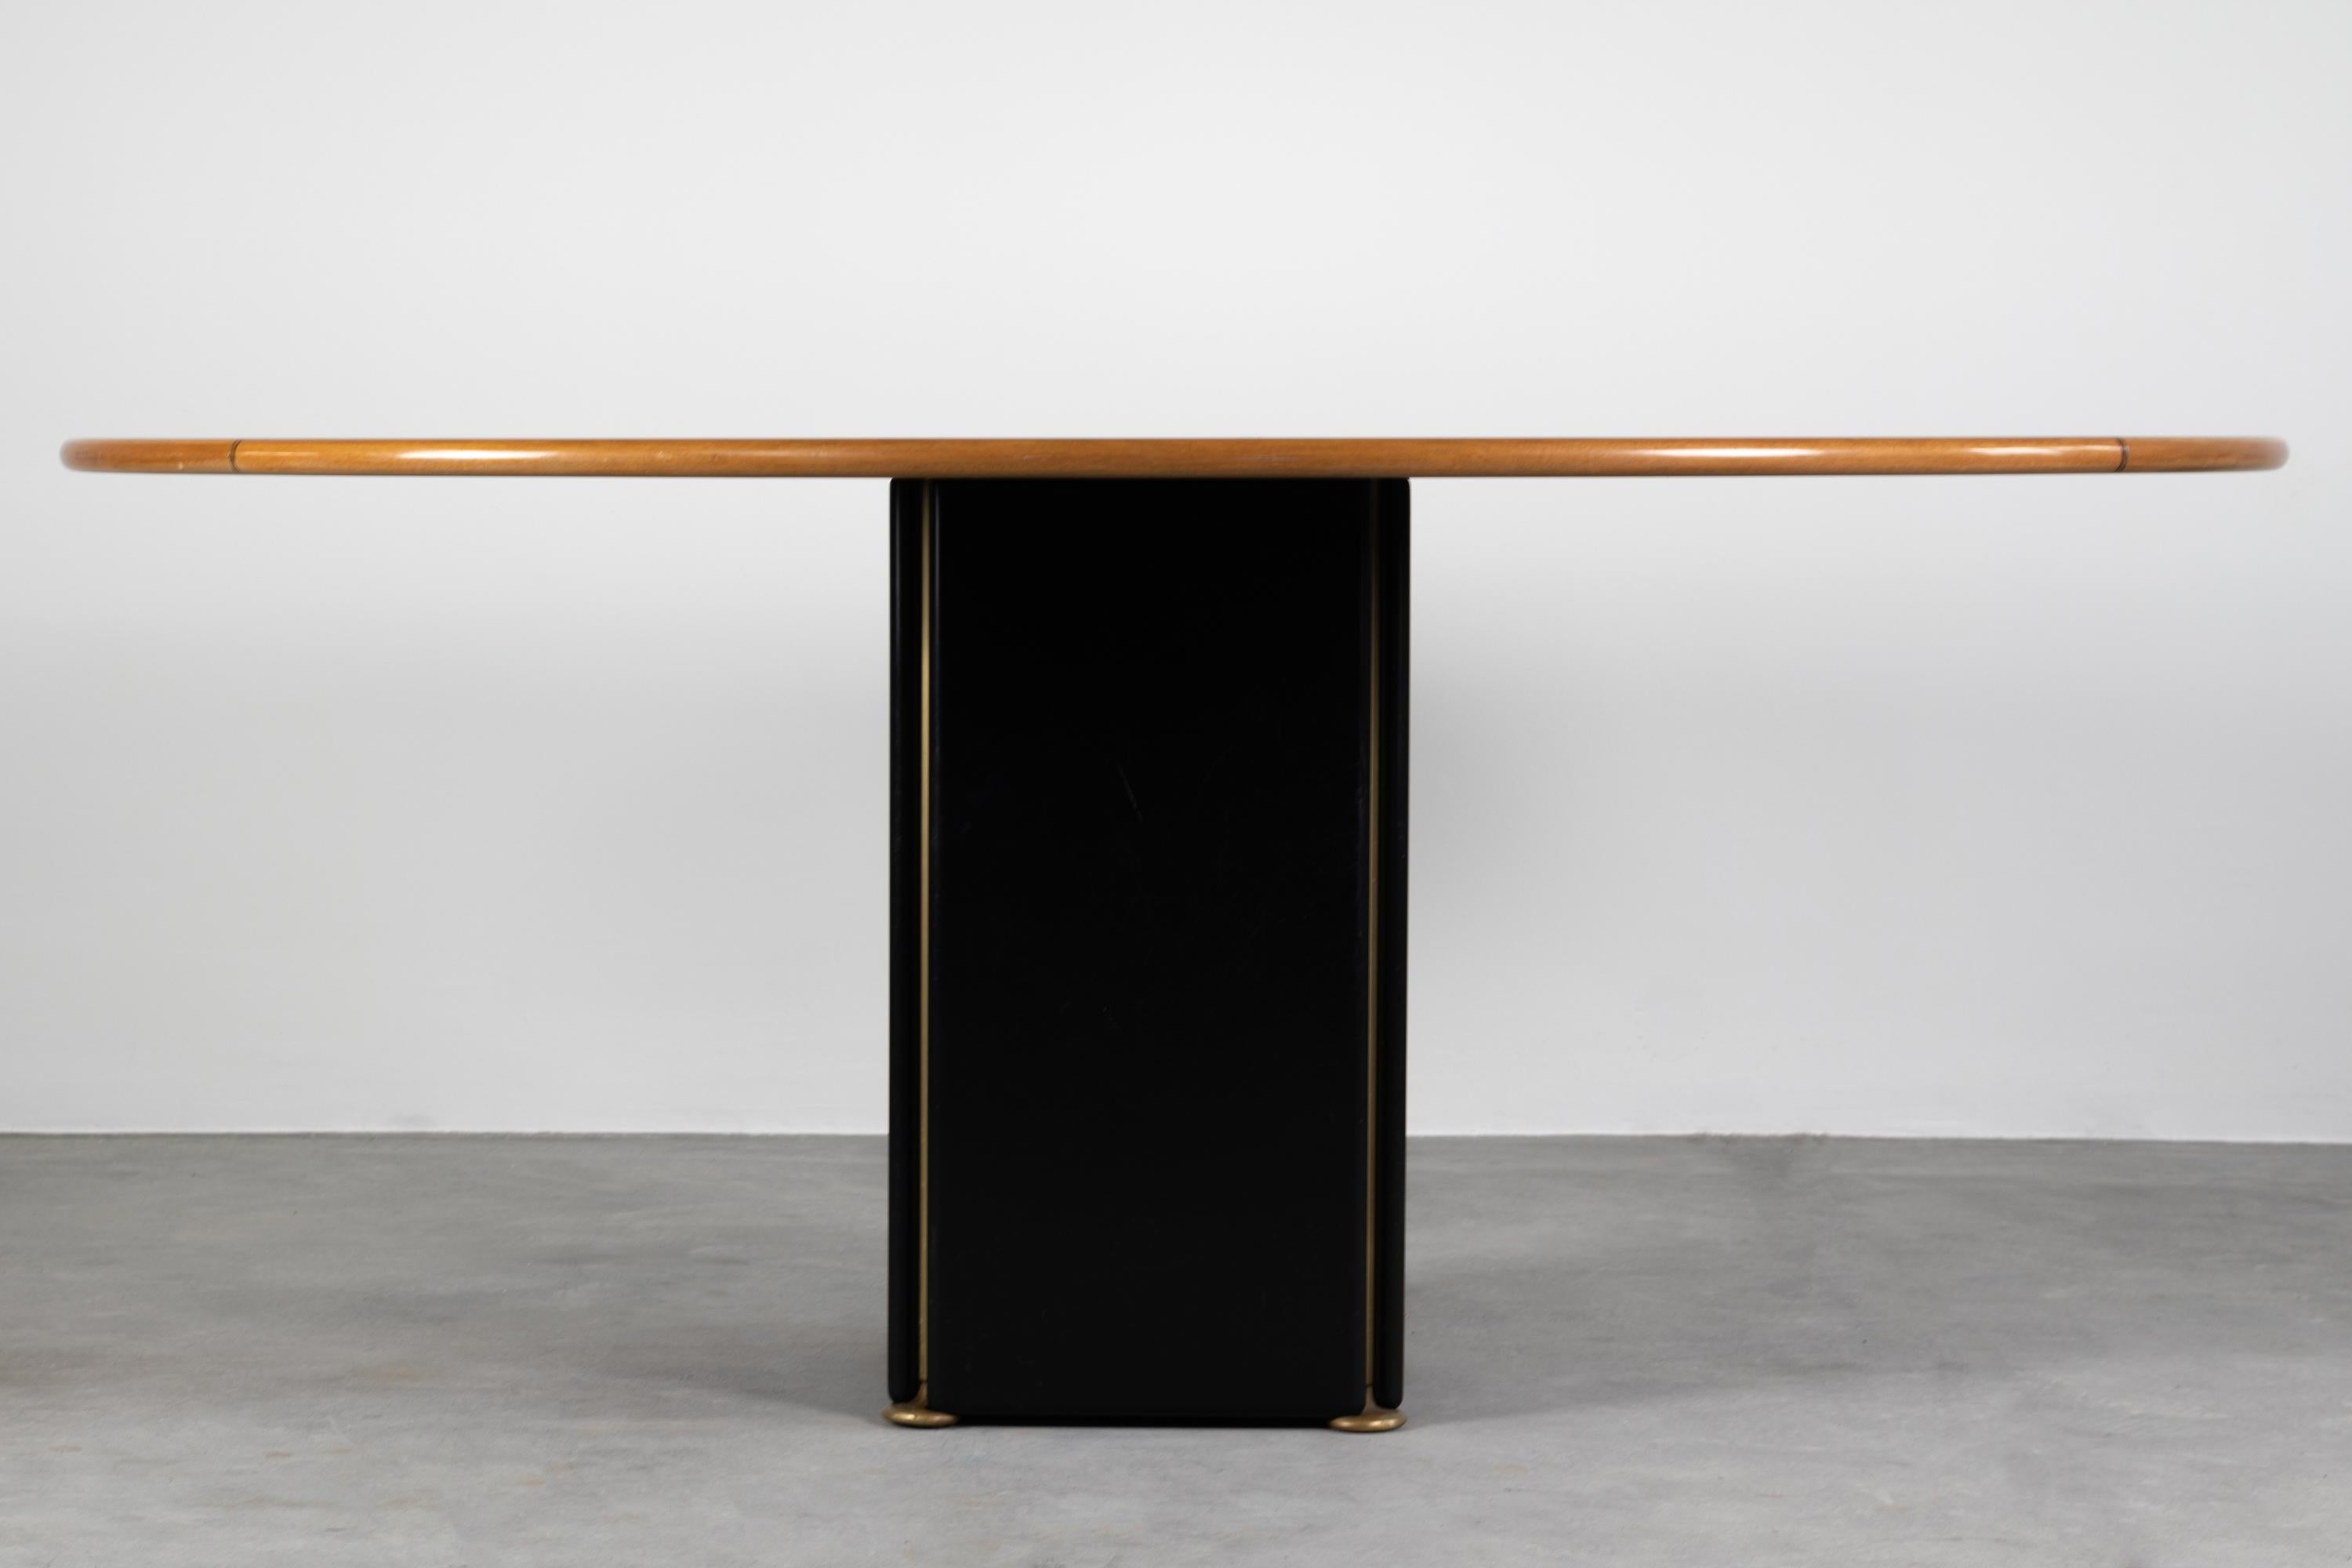 Ovaler Tisch der Serie Artona aus Holz mit Messingdetails, entworfen von Tobia und Afra Scarpa, hergestellt von Maxalto, 1970er Jahre.

Tobia Scarpa und seine Frau Afra Bianchin begannen ihre lange gemeinsame Karriere 1959 mit dem Entwurf des